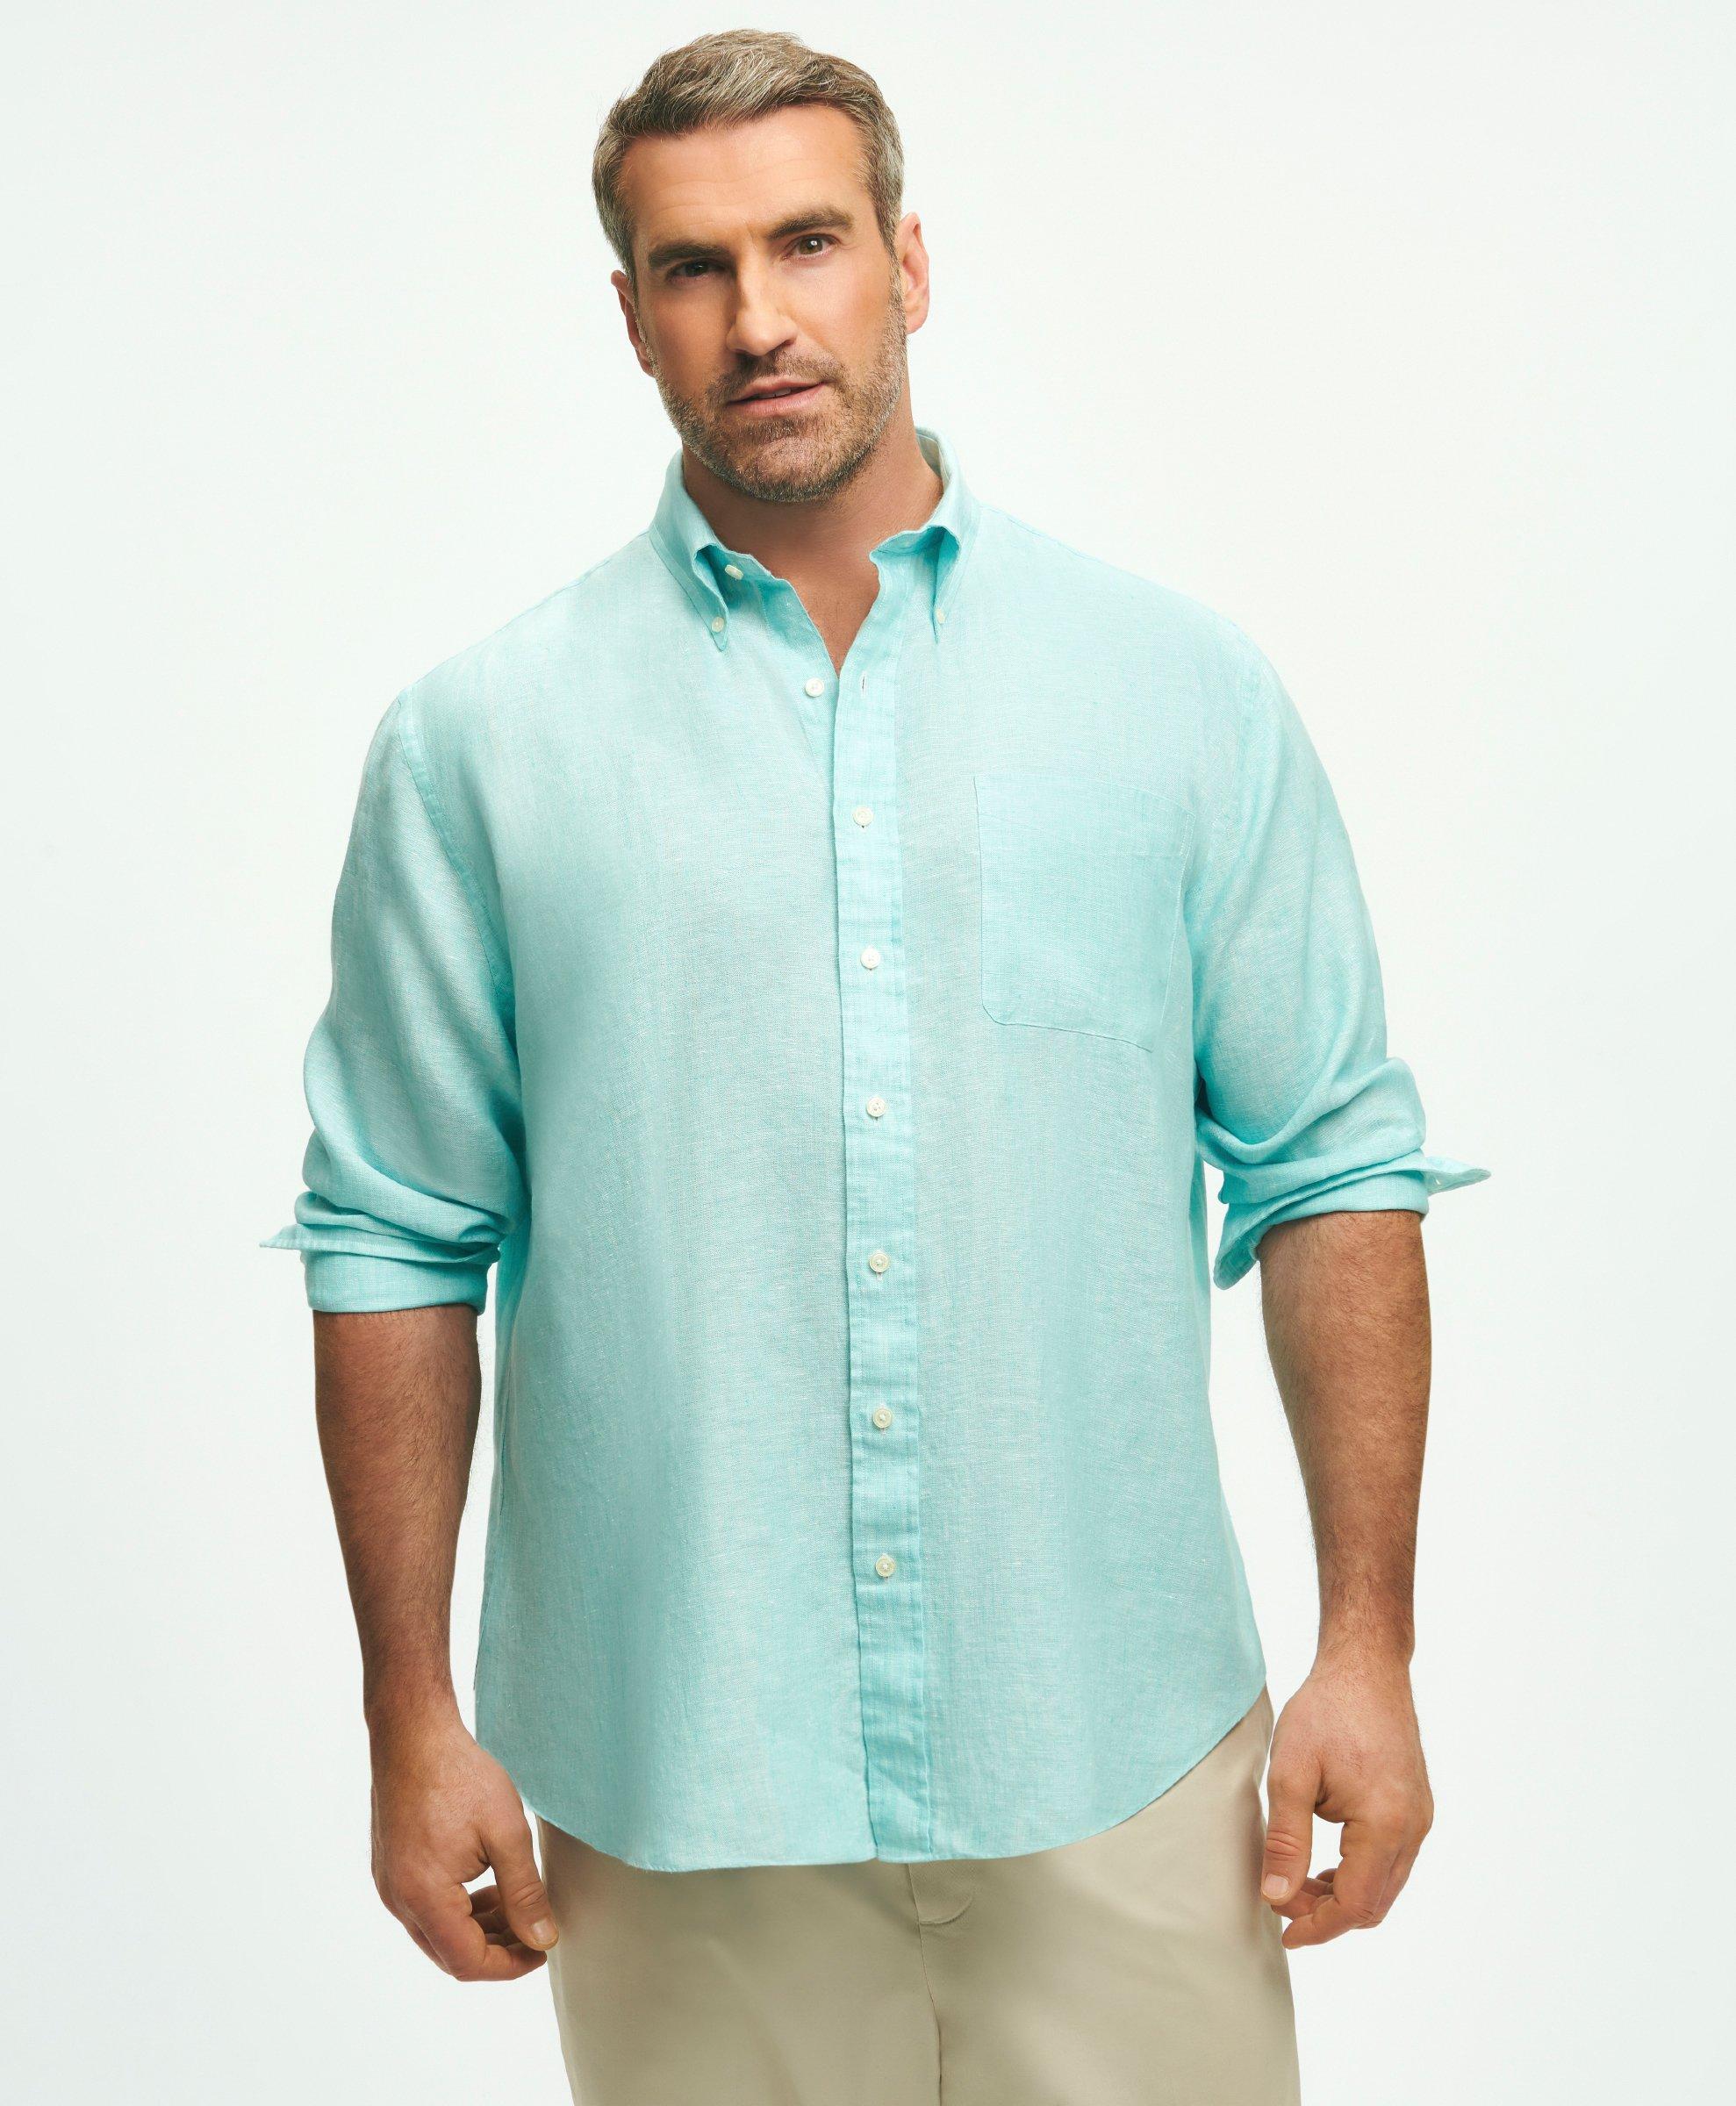 Brooks Brothers Big & Tall Sport Shirt, Irish Linen | Marine Blue | Size 4x Tall